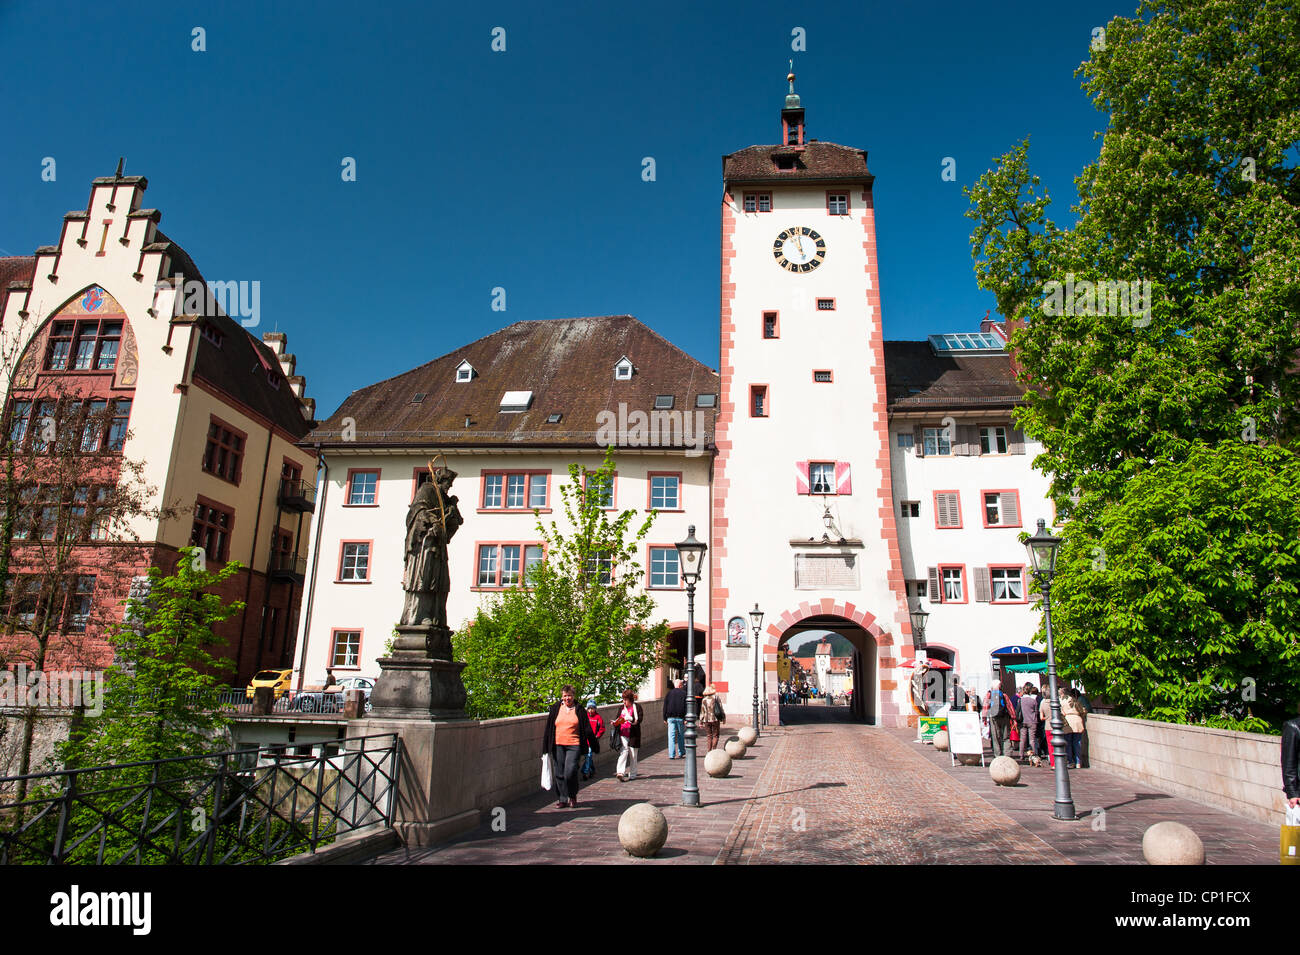 Centro storico della città di Waldshut, Germania, 2012 Foto Stock